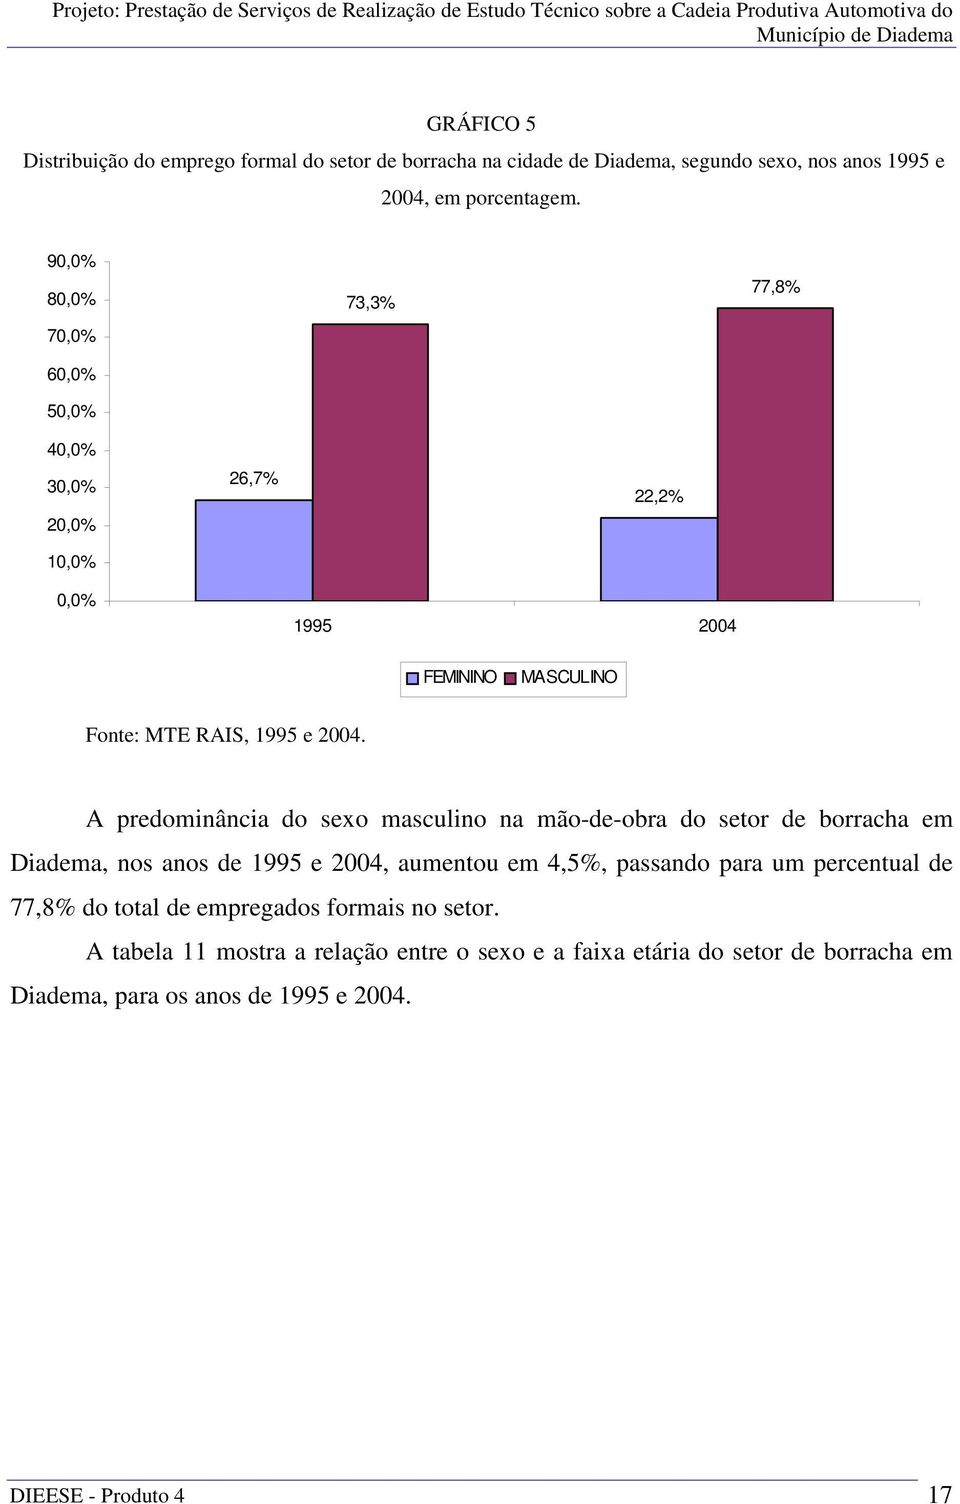 A predominância do sexo masculino na mão-de-obra do setor de borracha em Diadema, nos anos de 1995 e 2004, aumentou em 4,5%, passando para um percentual de